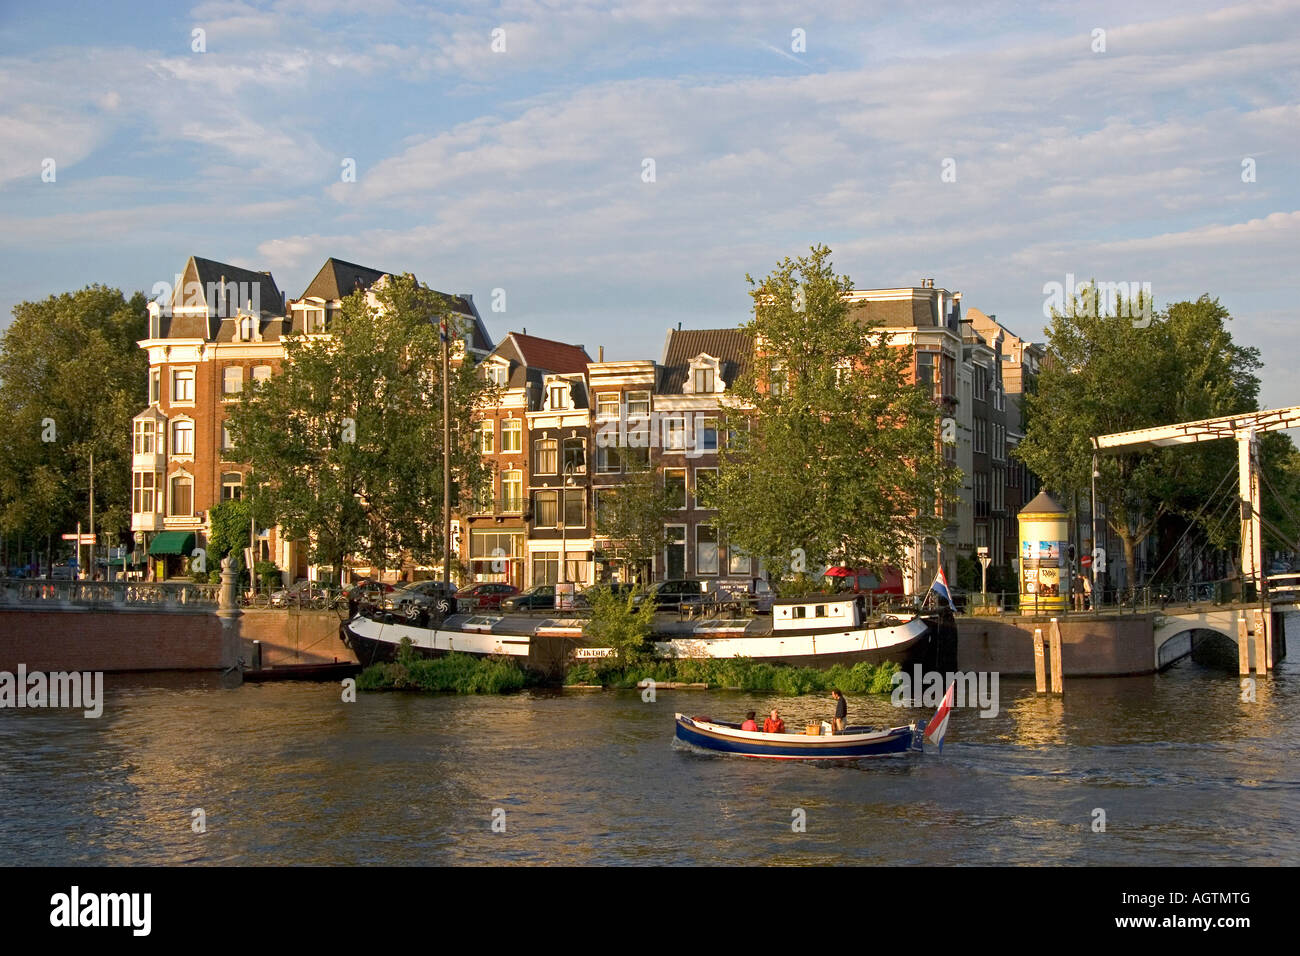 Navigation de plaisance sur la rivière Amstel à Amsterdam Pays-Bas Banque D'Images